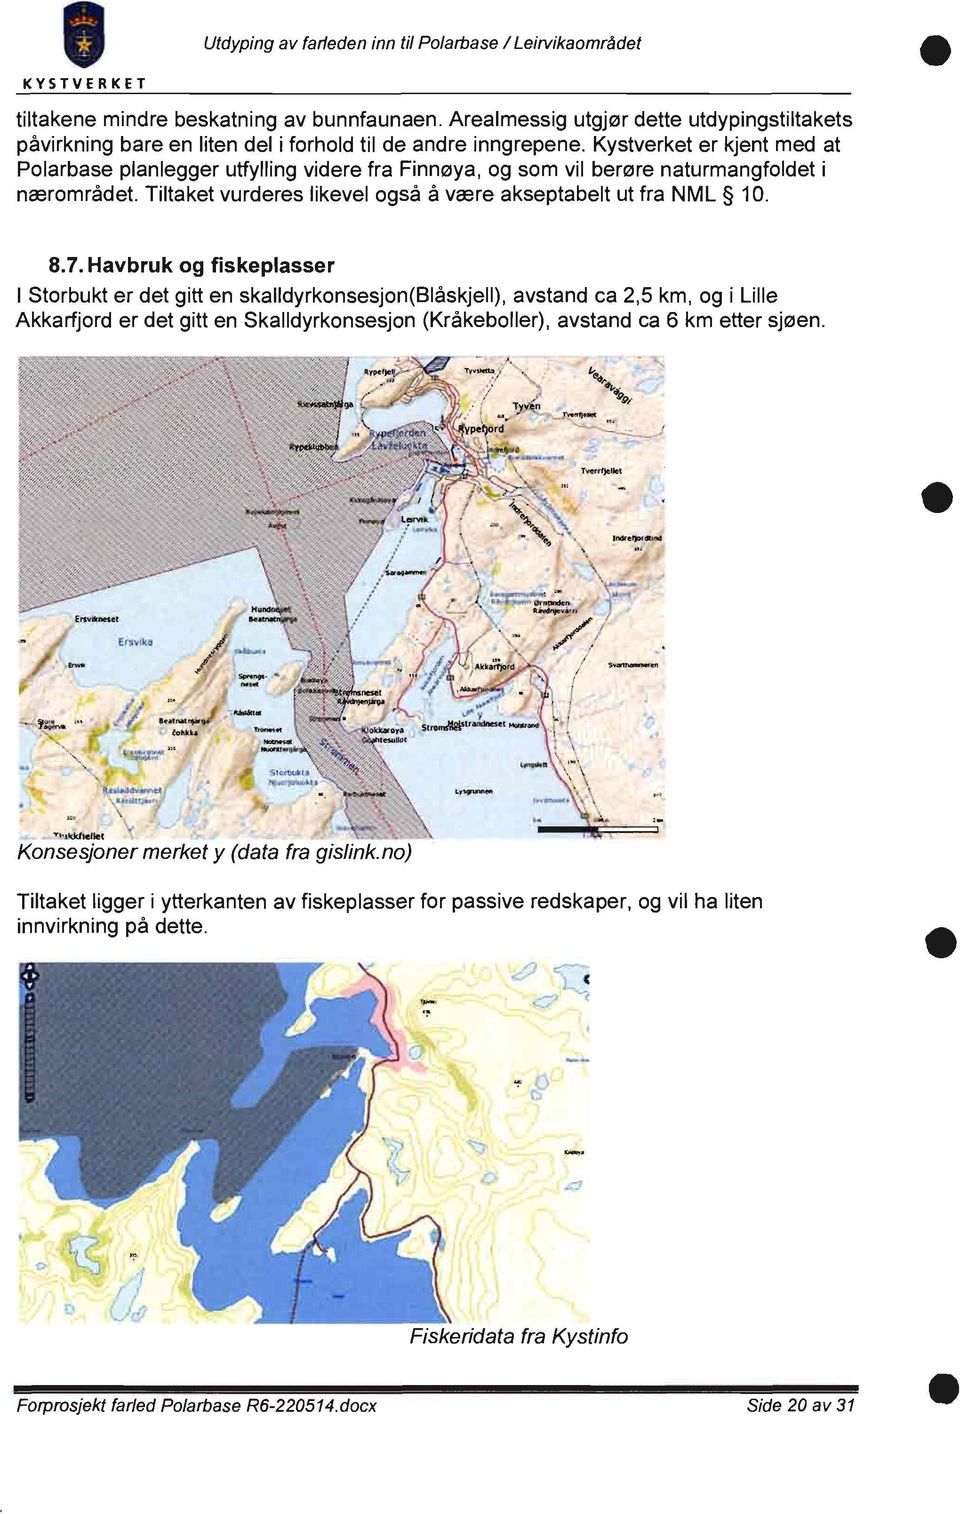 Kystverket er kjent med at Polarbase planlegger utfylling videre fra Finnøya, og som vil berøre naturmangfoldet i nærområdet. Tiltaket vurderes likevel også å være akseptabelt ut fra NML 10. 8.7.